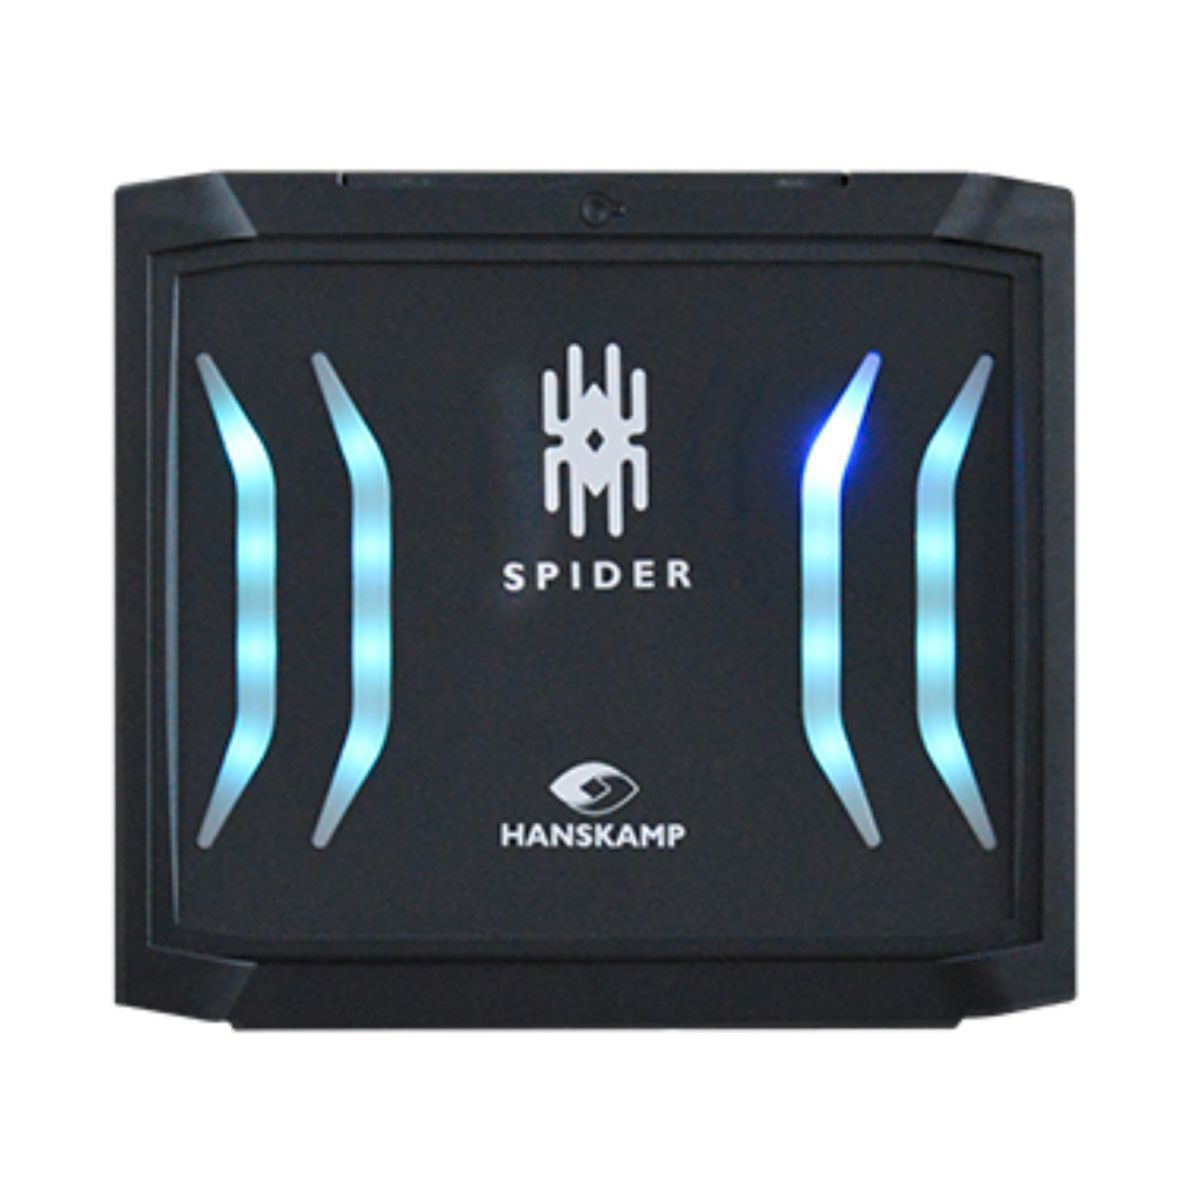 spiderclient avec spiderpcb circuit imprim sans alimentation lectrique 24v dc